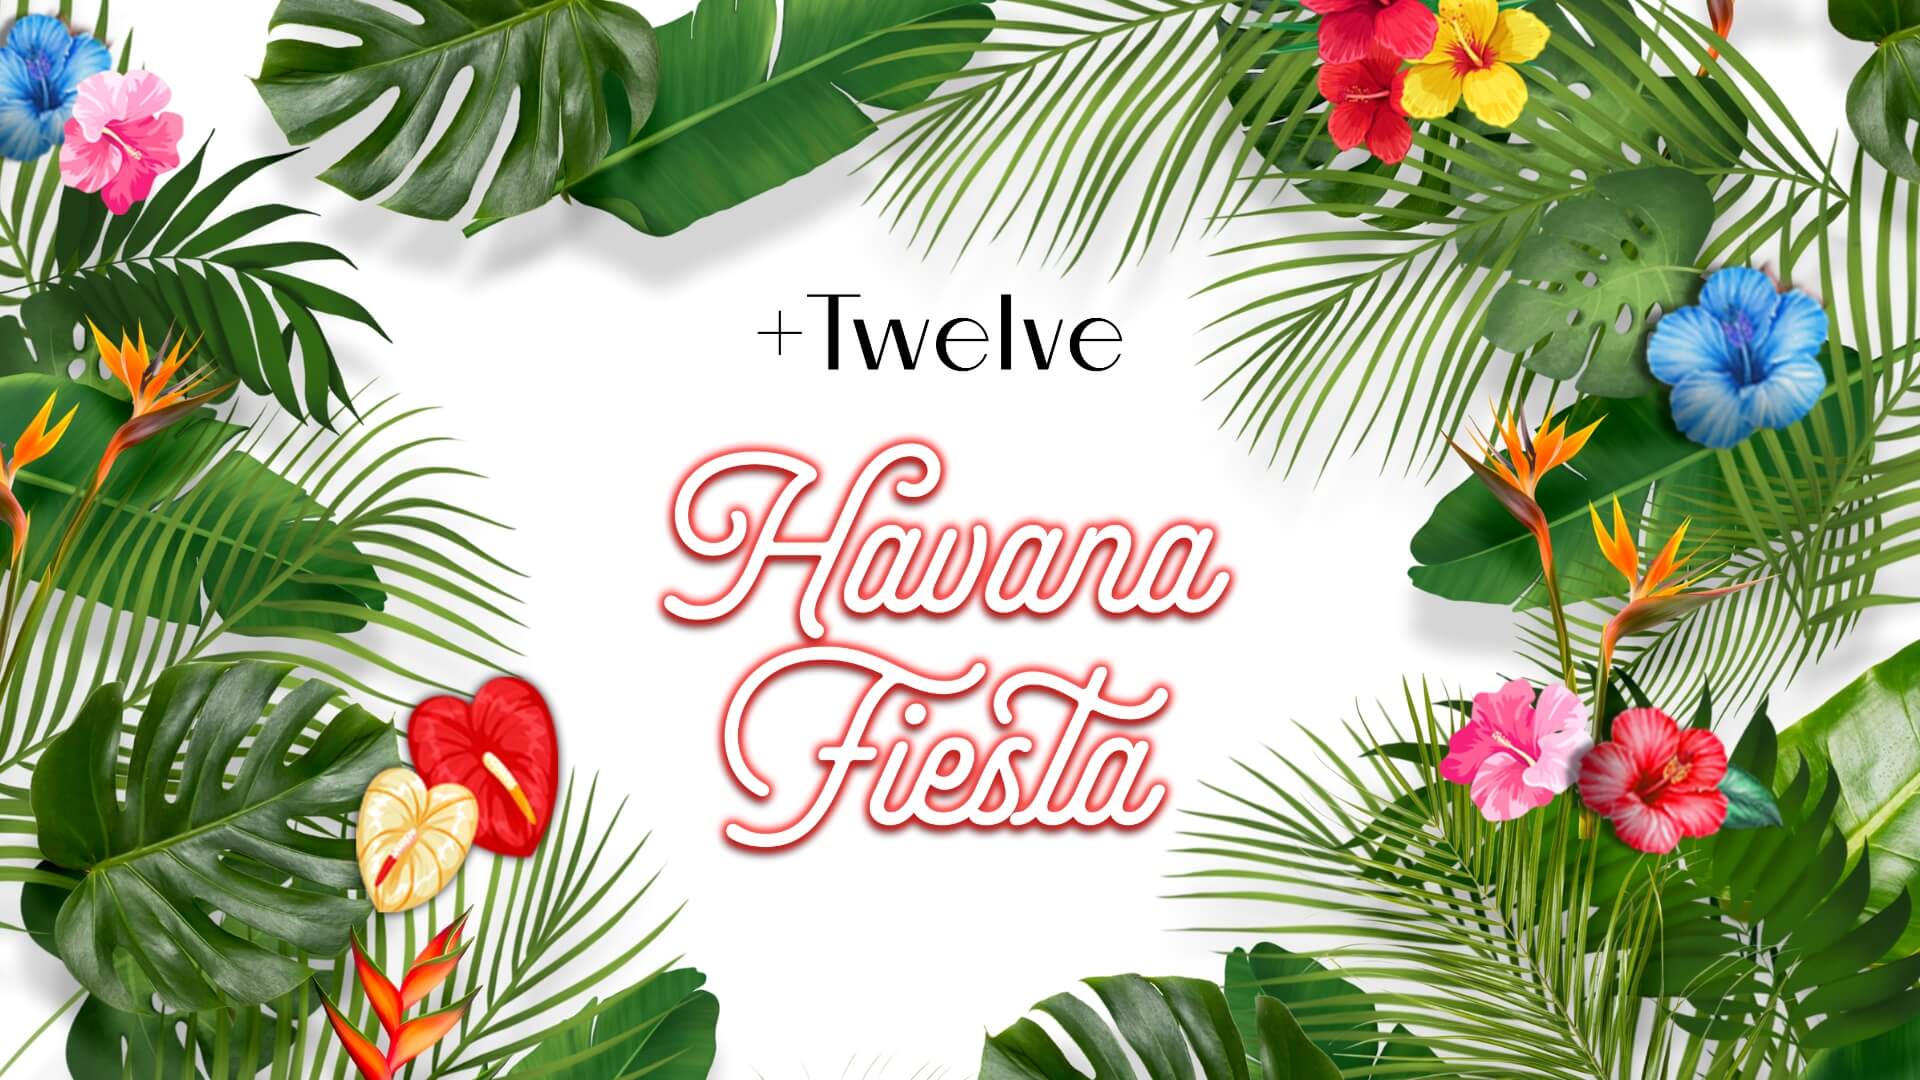 Havana Fiesta at +Twelve